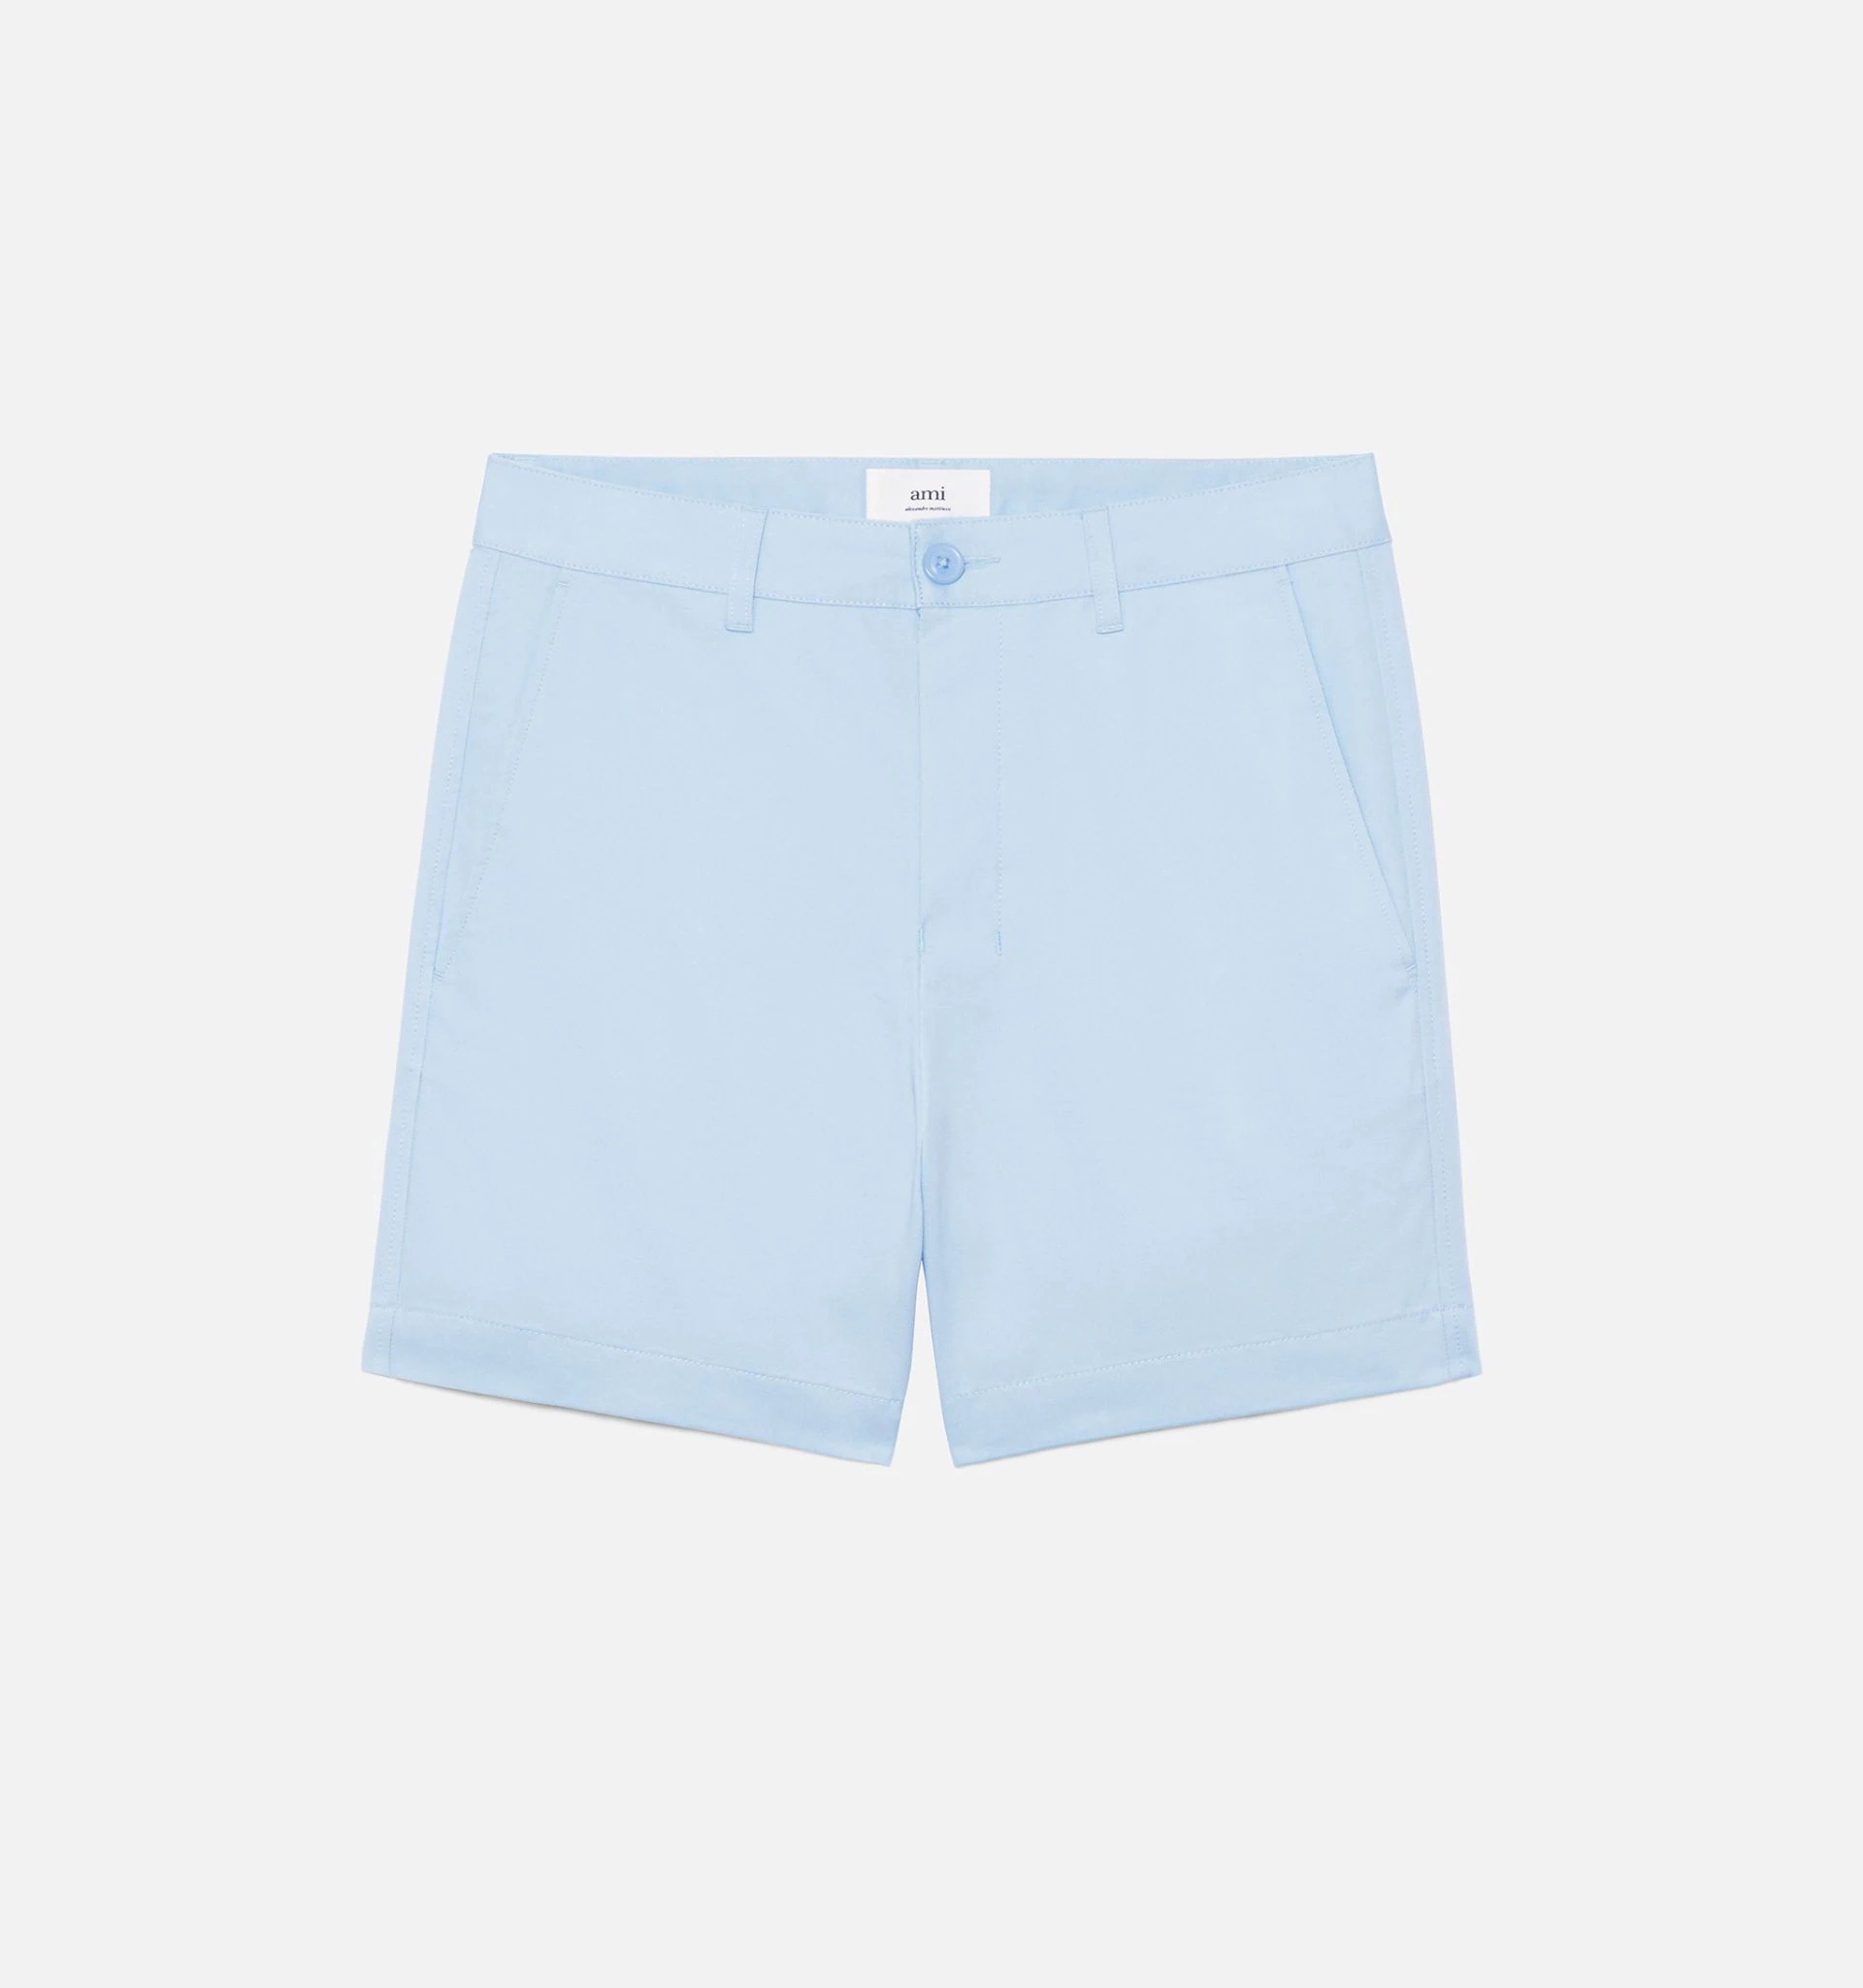 Chino Short Pants - 5